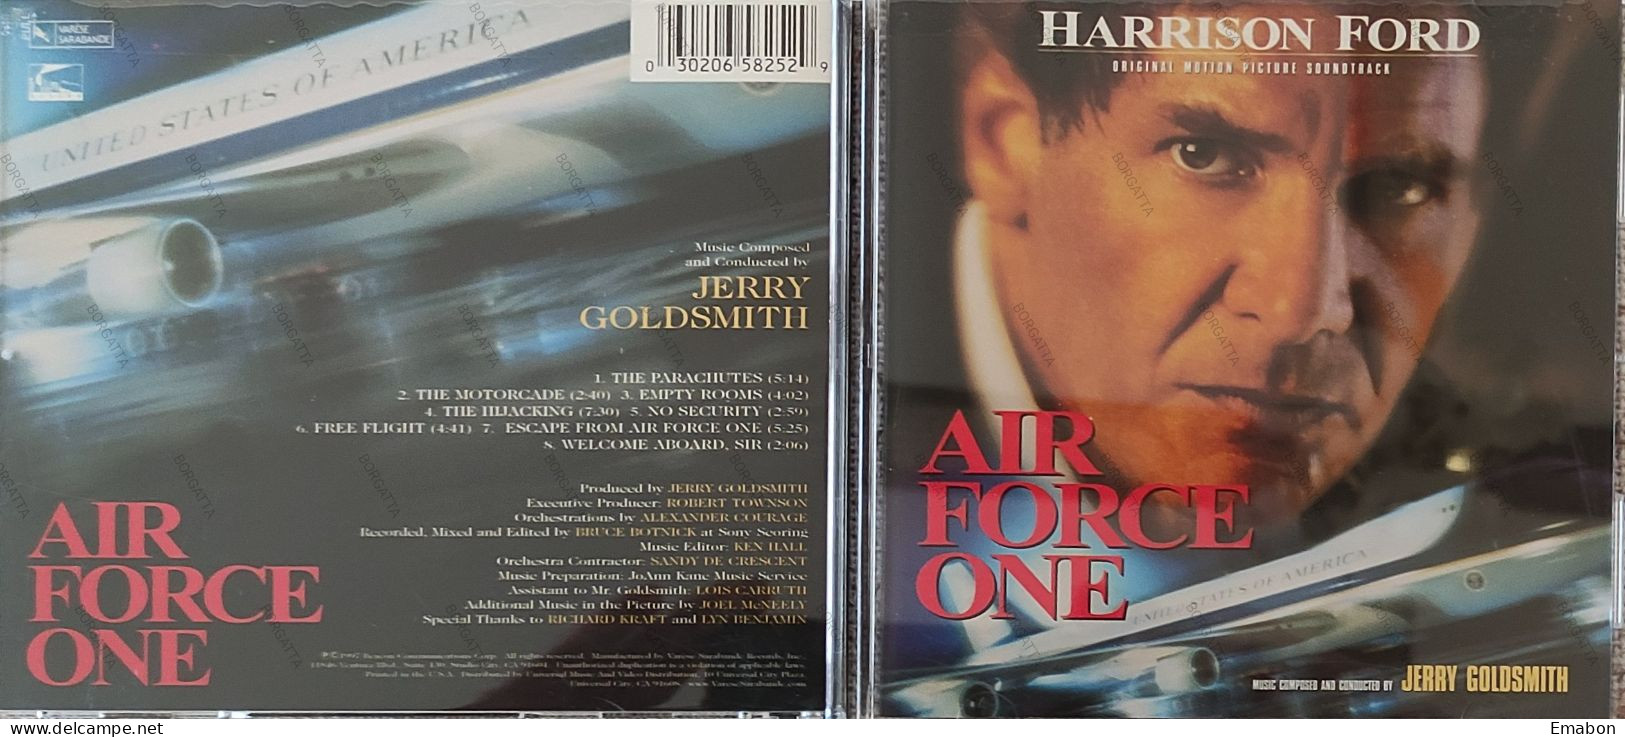 BORGATTA - FILM MUSIC  - Cd  HARRISON FORD - AIR FORCE ONE - VARESE SARABANDE 1997 - USATO In Buono Stato - Filmmusik